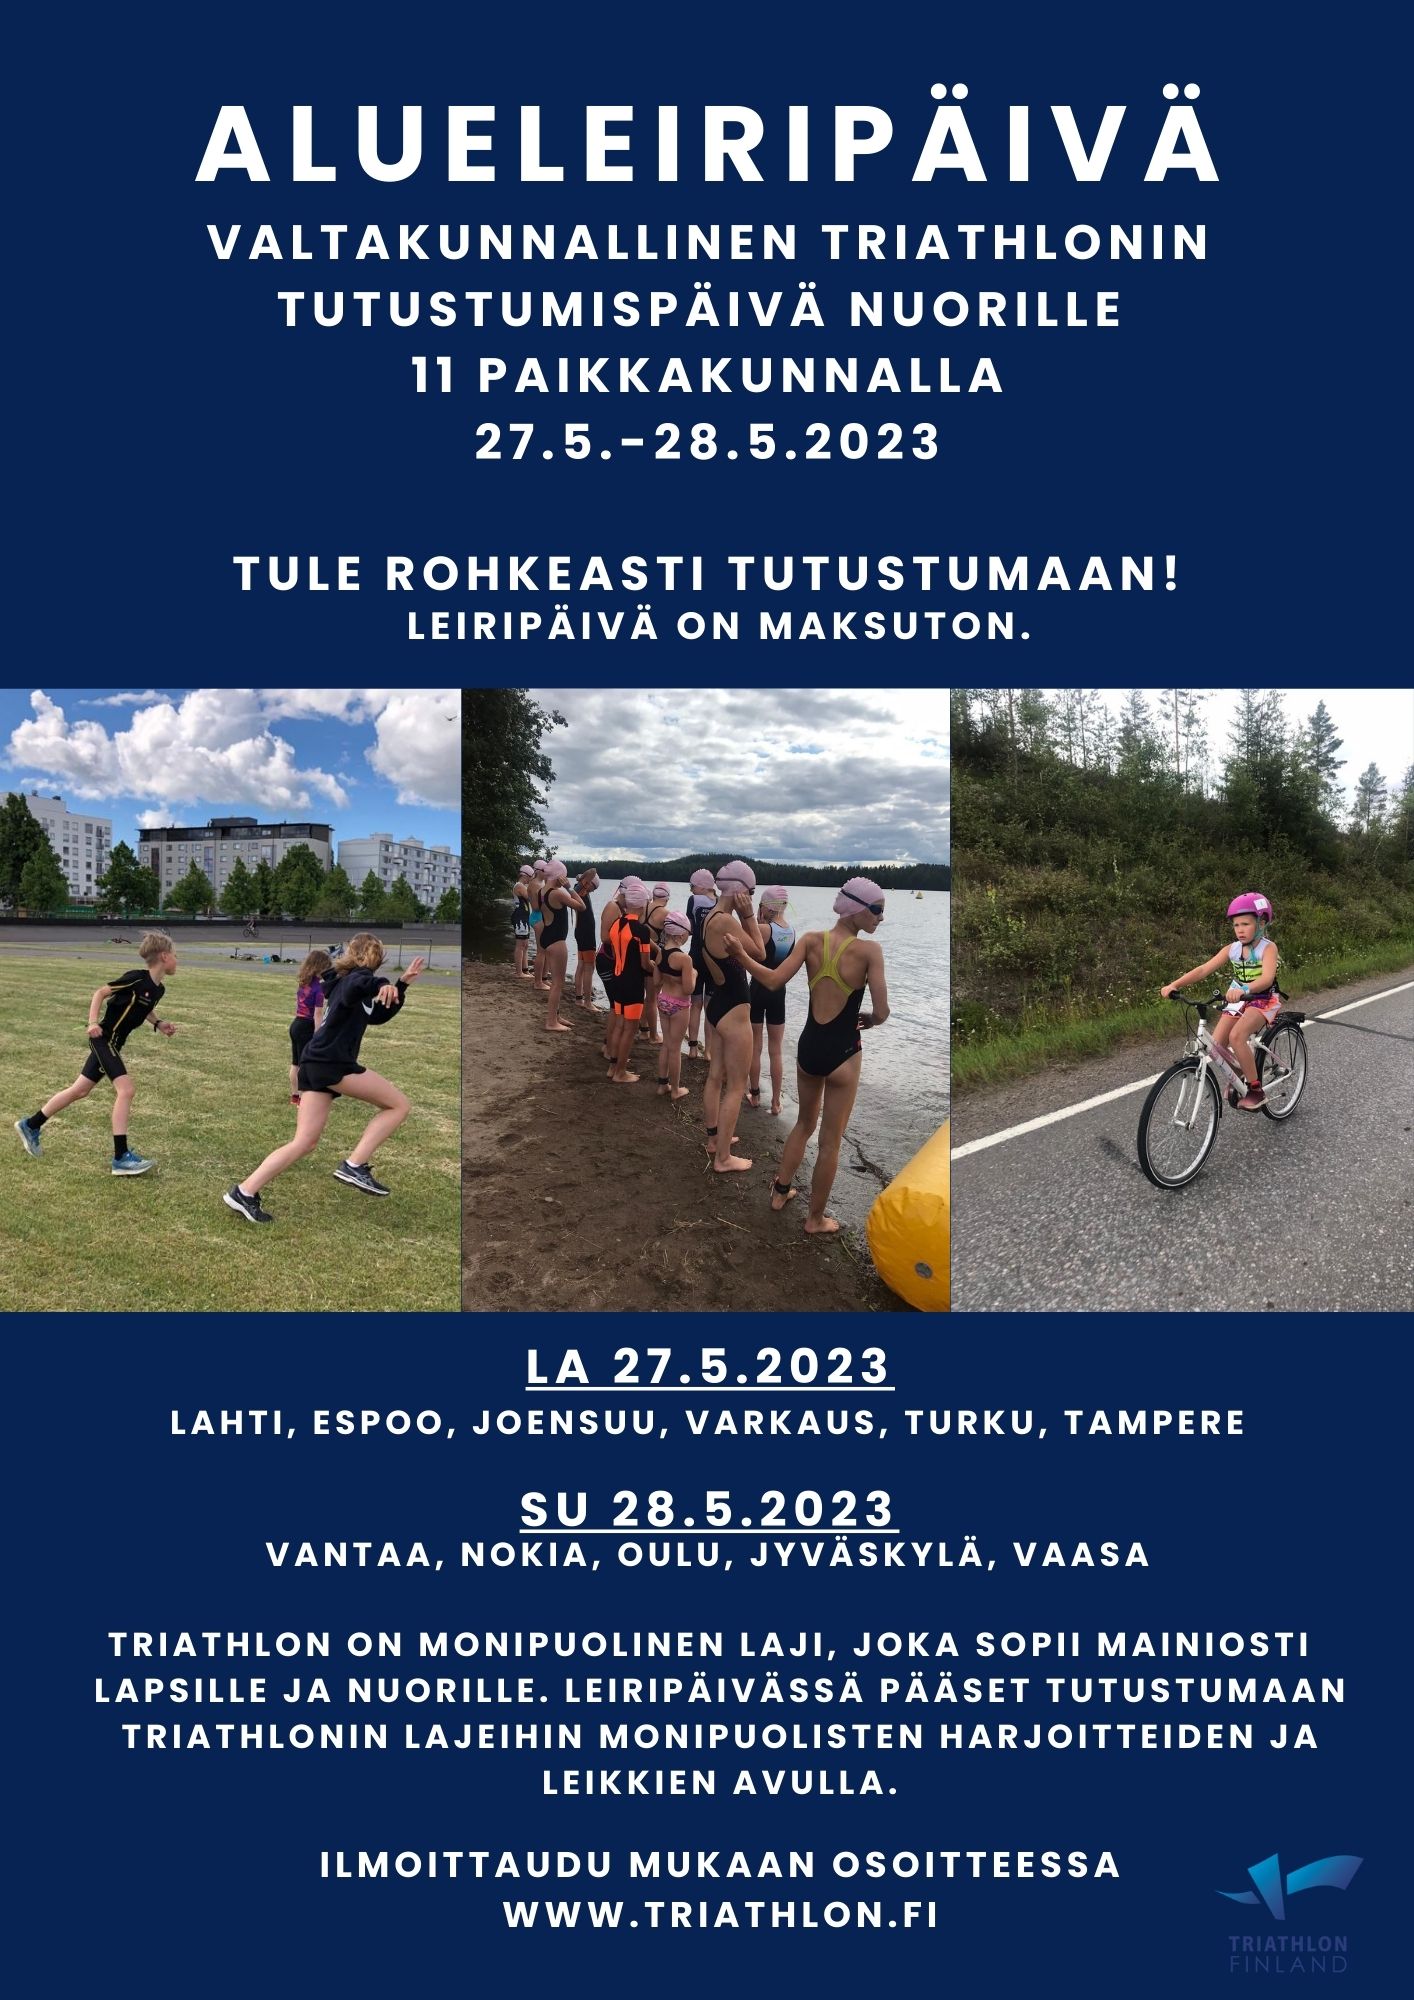 Triathlonista hyvä harrastus lapsille & nuorille Helsinki Triathlon ry